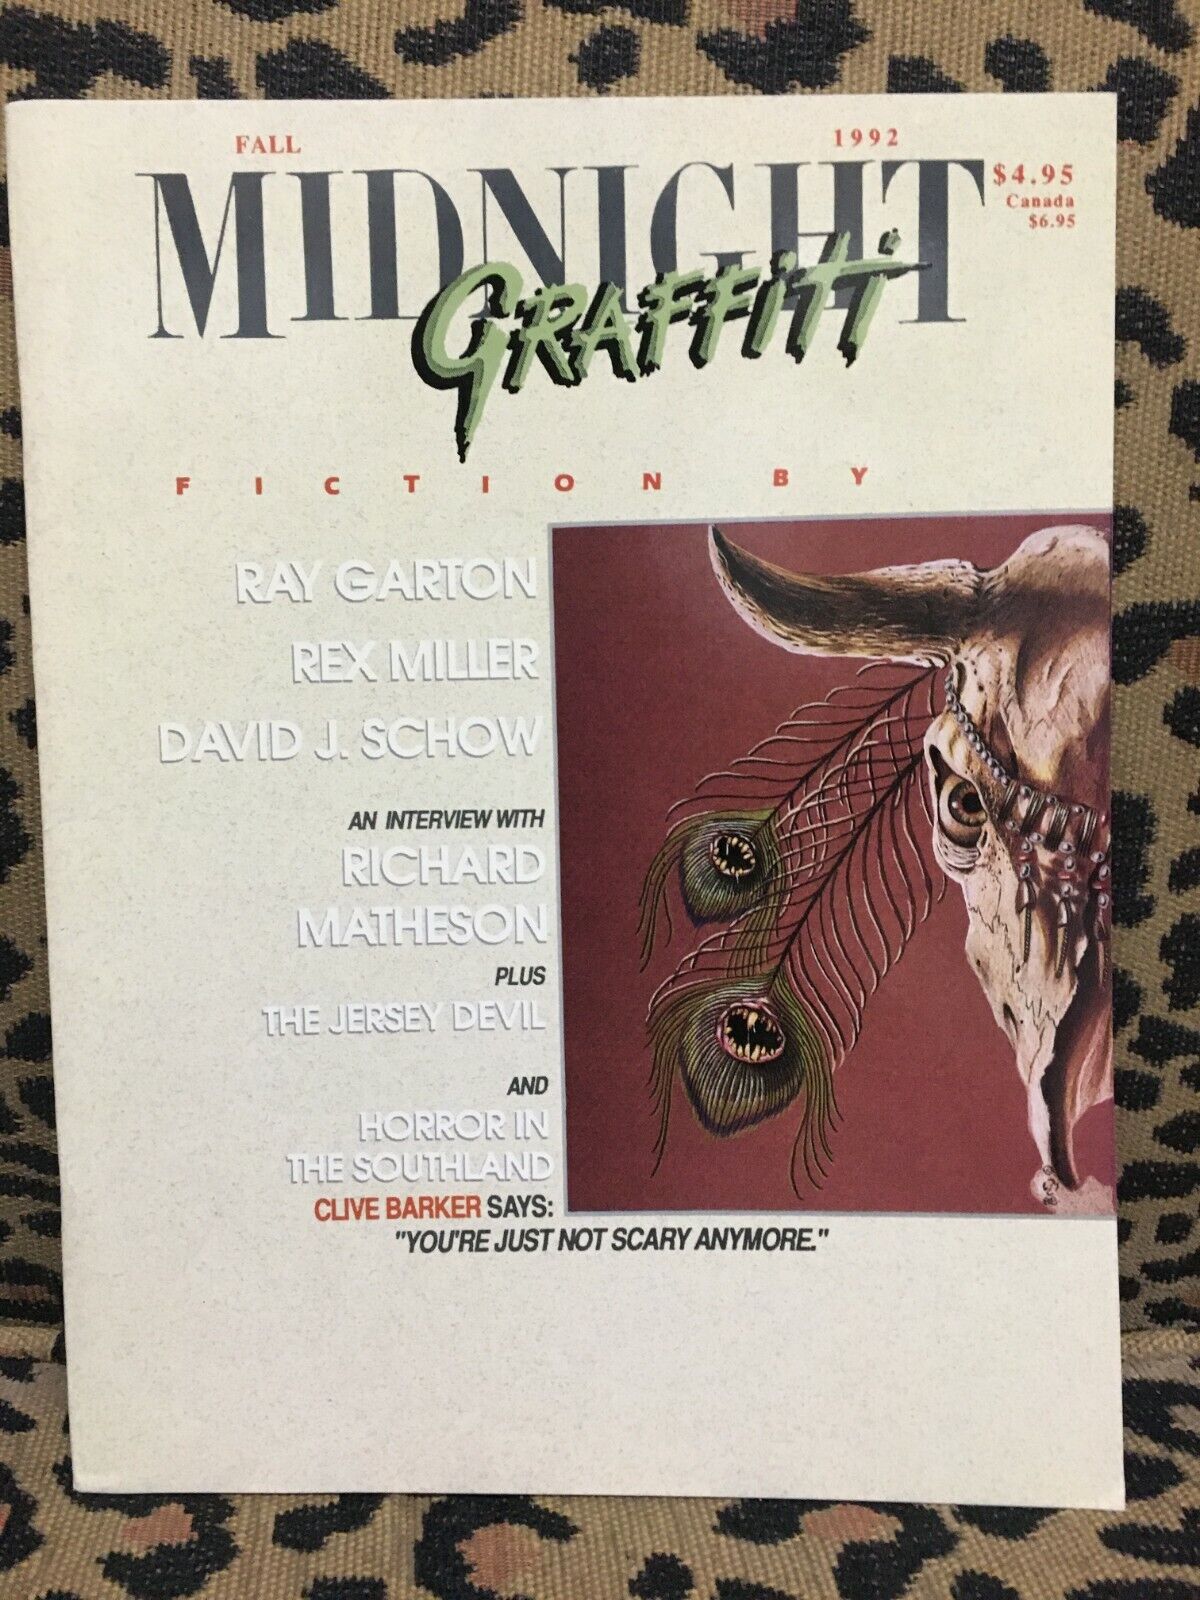 MIDNIGHT GRAFFITI #7 FALL 1992 Richard Matheson Interview - Literature Magazine